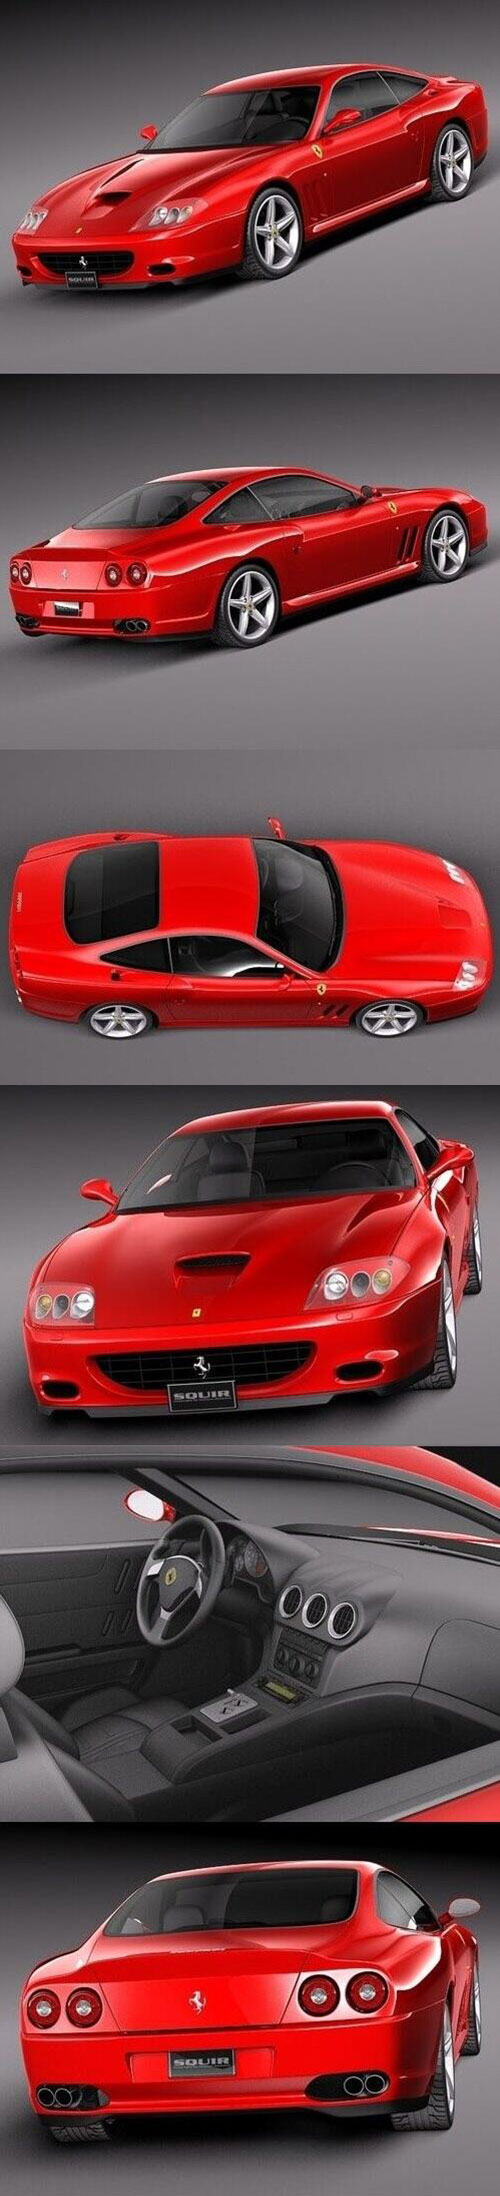 Ferrari 575M Maranello 2002-2006 3D Model